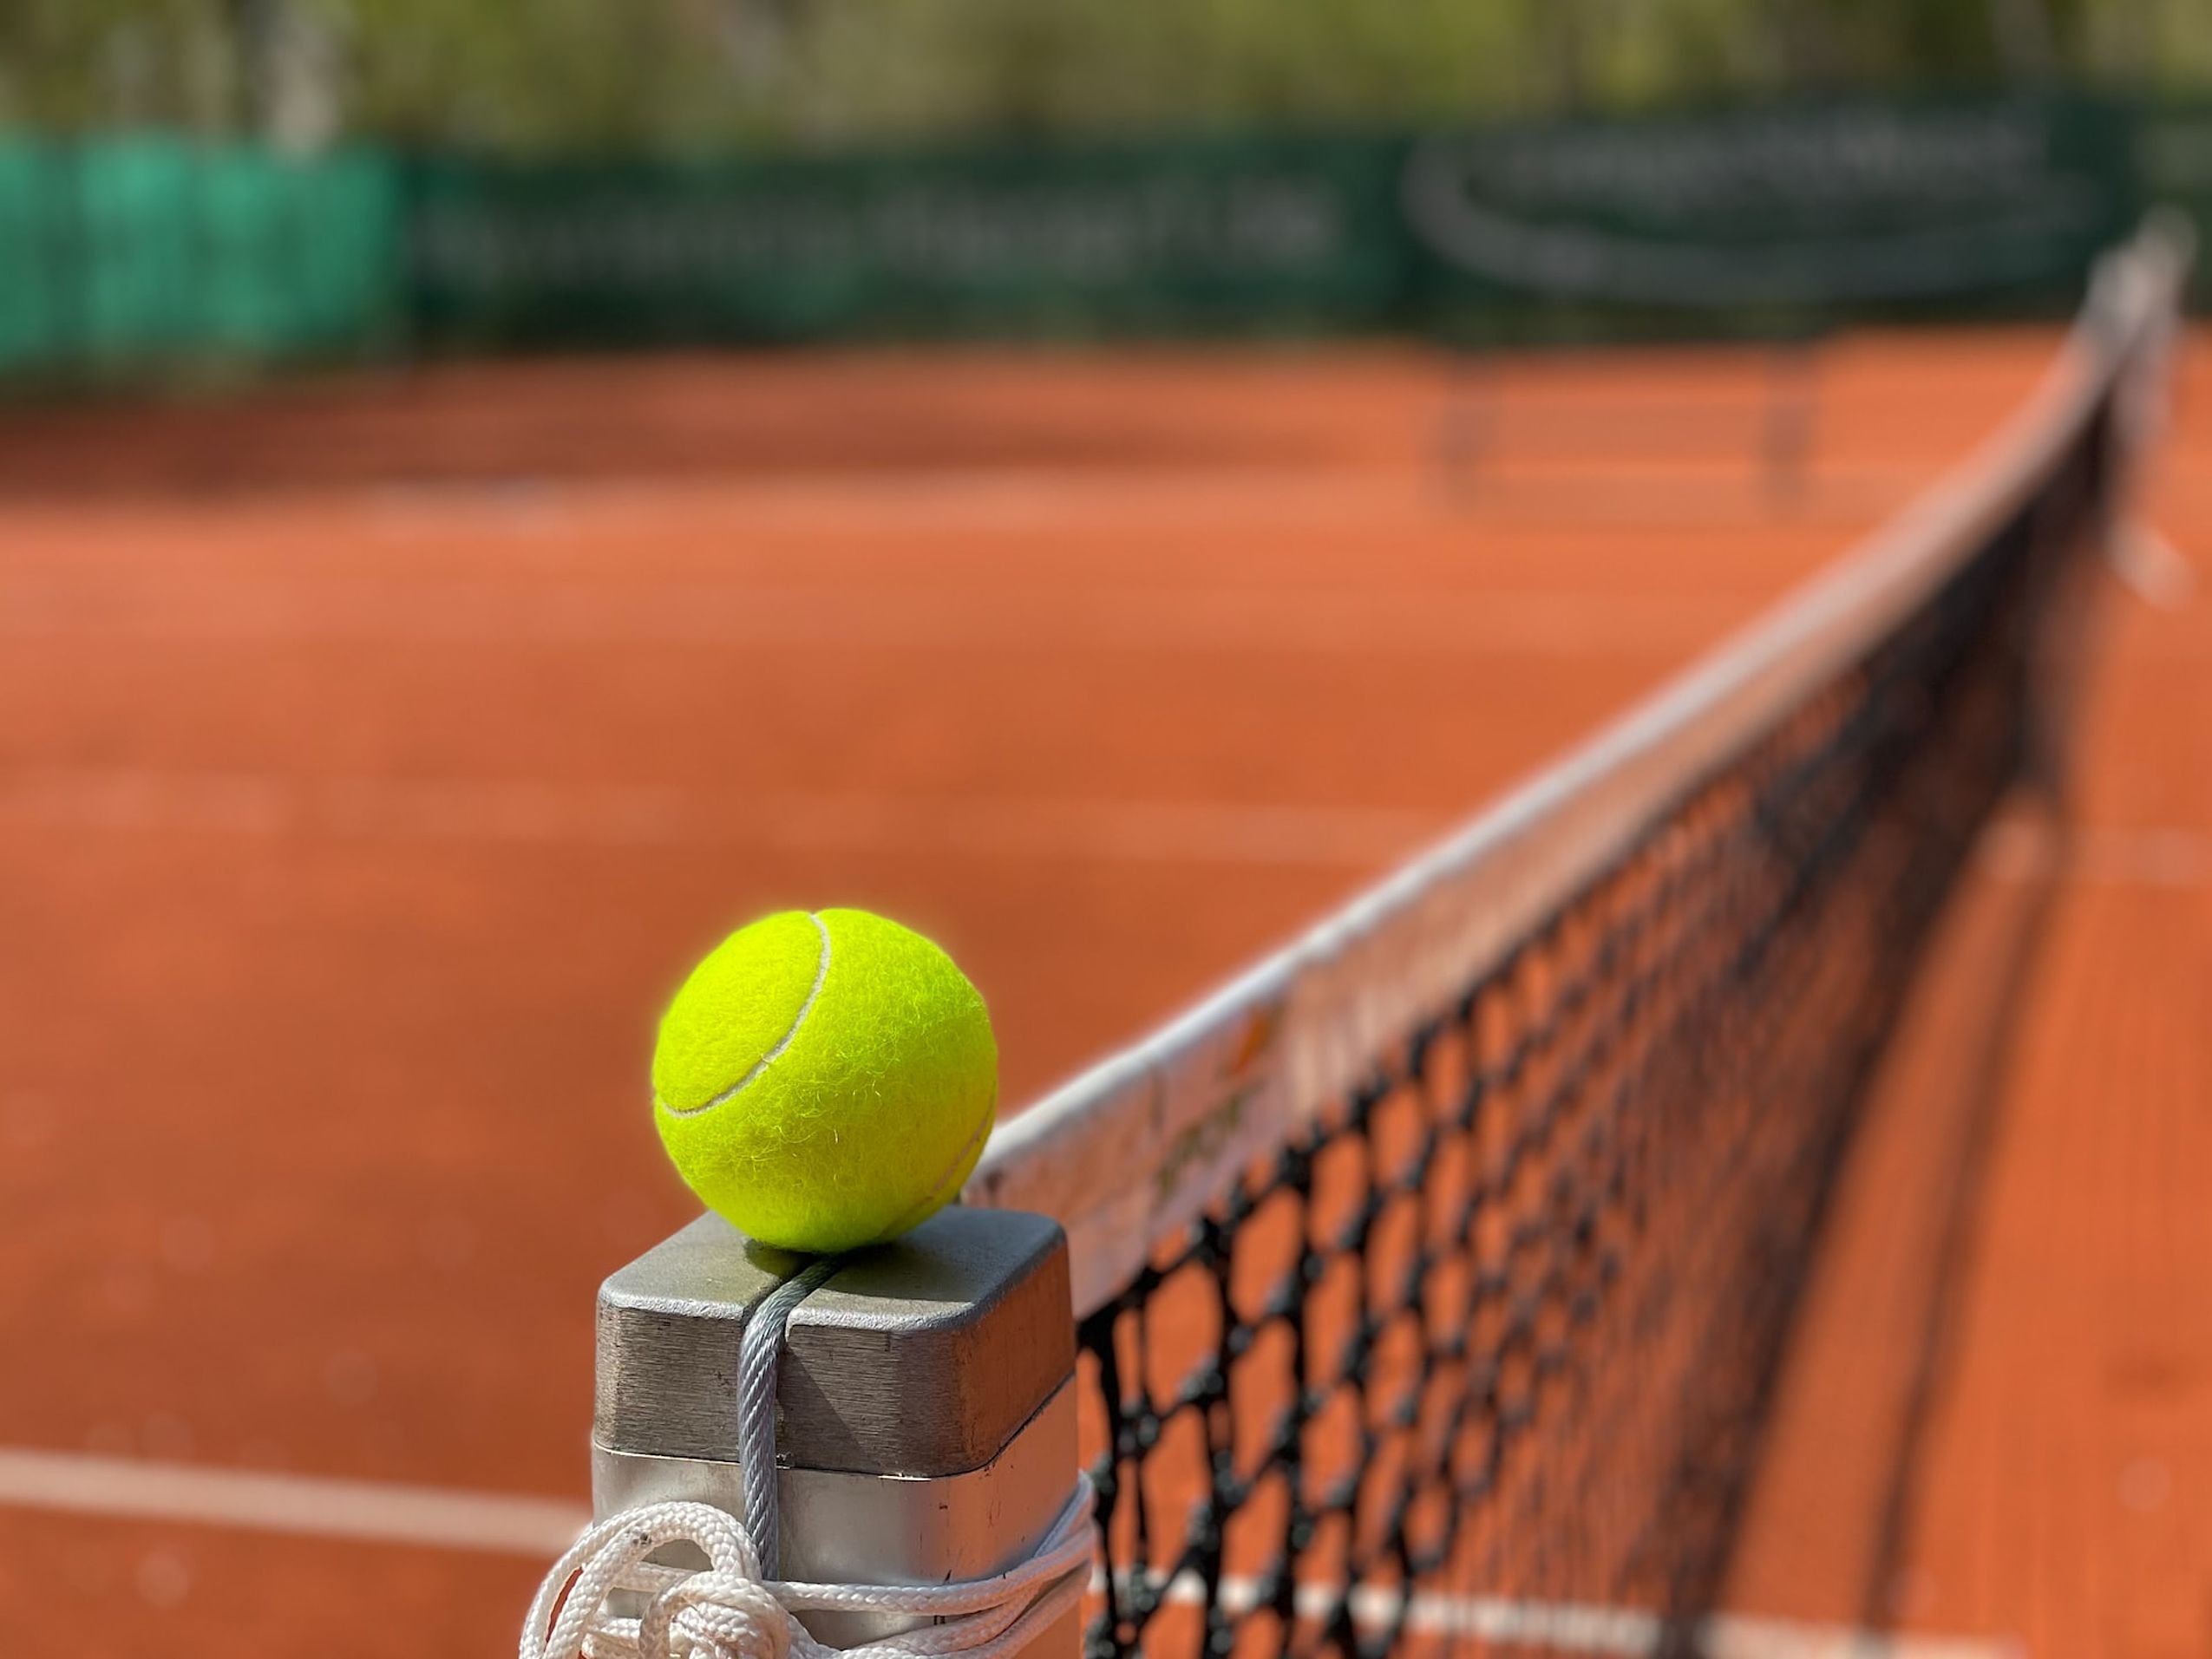 Nahaufnahme eines Tennisballs an der Stange des Tennisnetzes